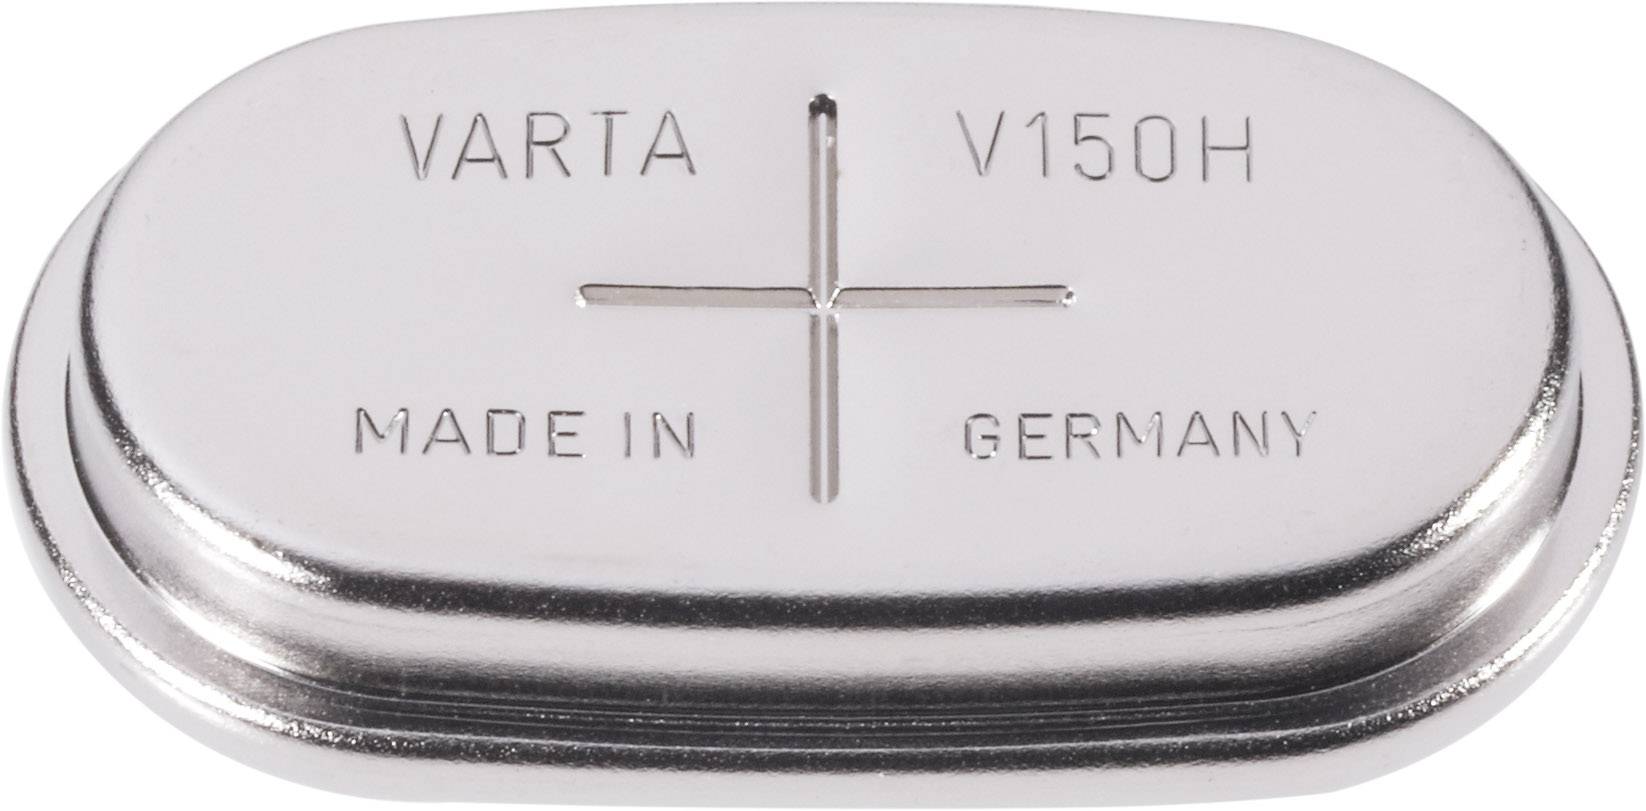 VARTA Knopfzellen-Akku 150H NiMH Varta V 150 H 150 mAh 1.2 V 1 St.